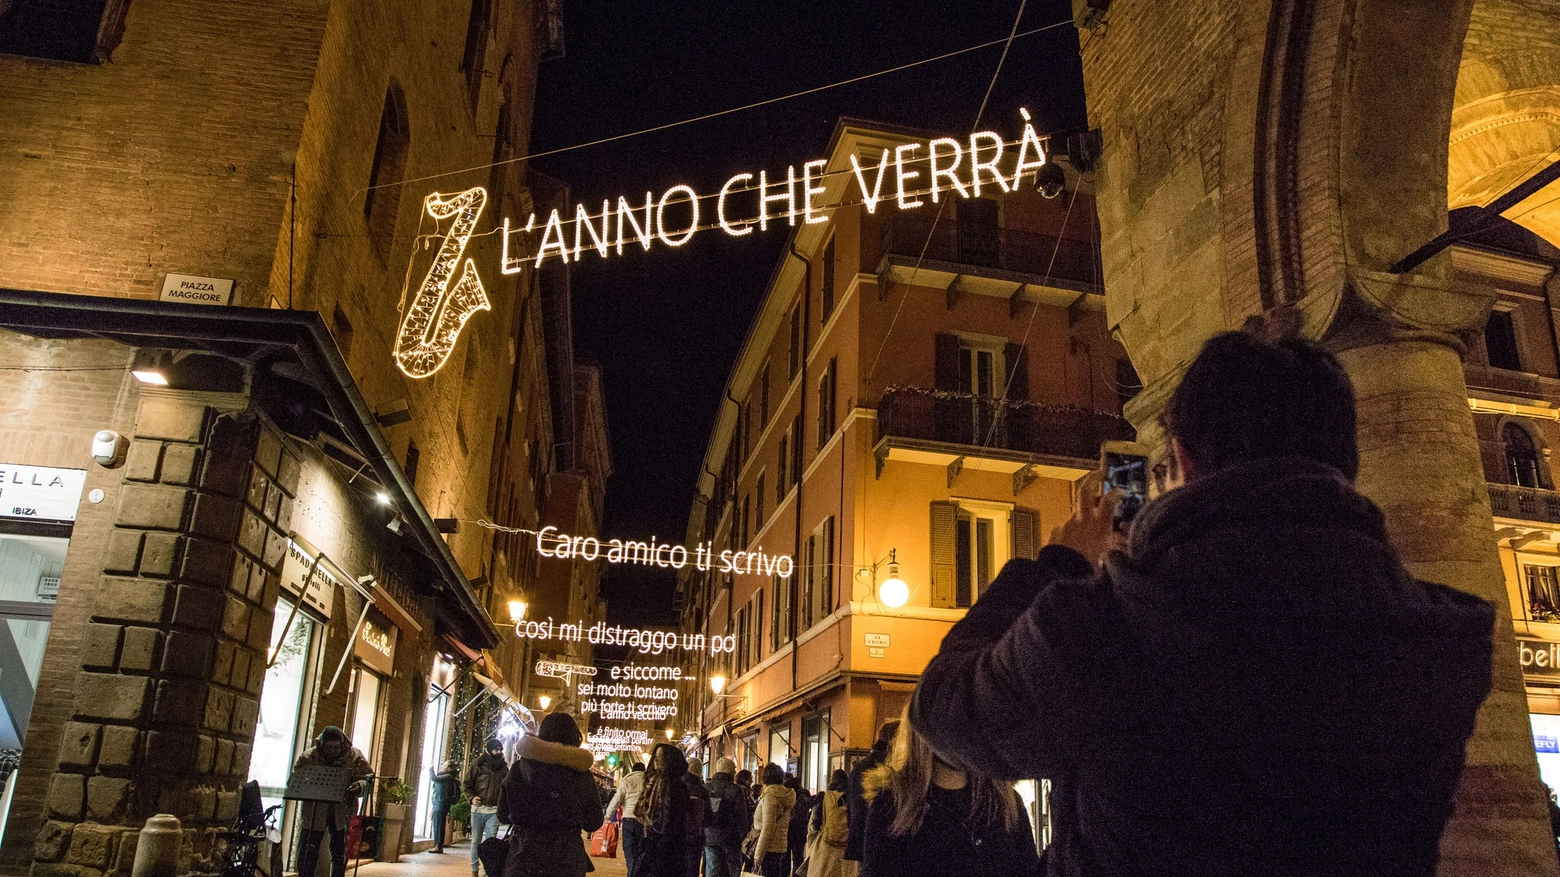 Pioggia di selfie con le luci dedicate a Lucio Dalla. Ora vanno all'asta (Dire)